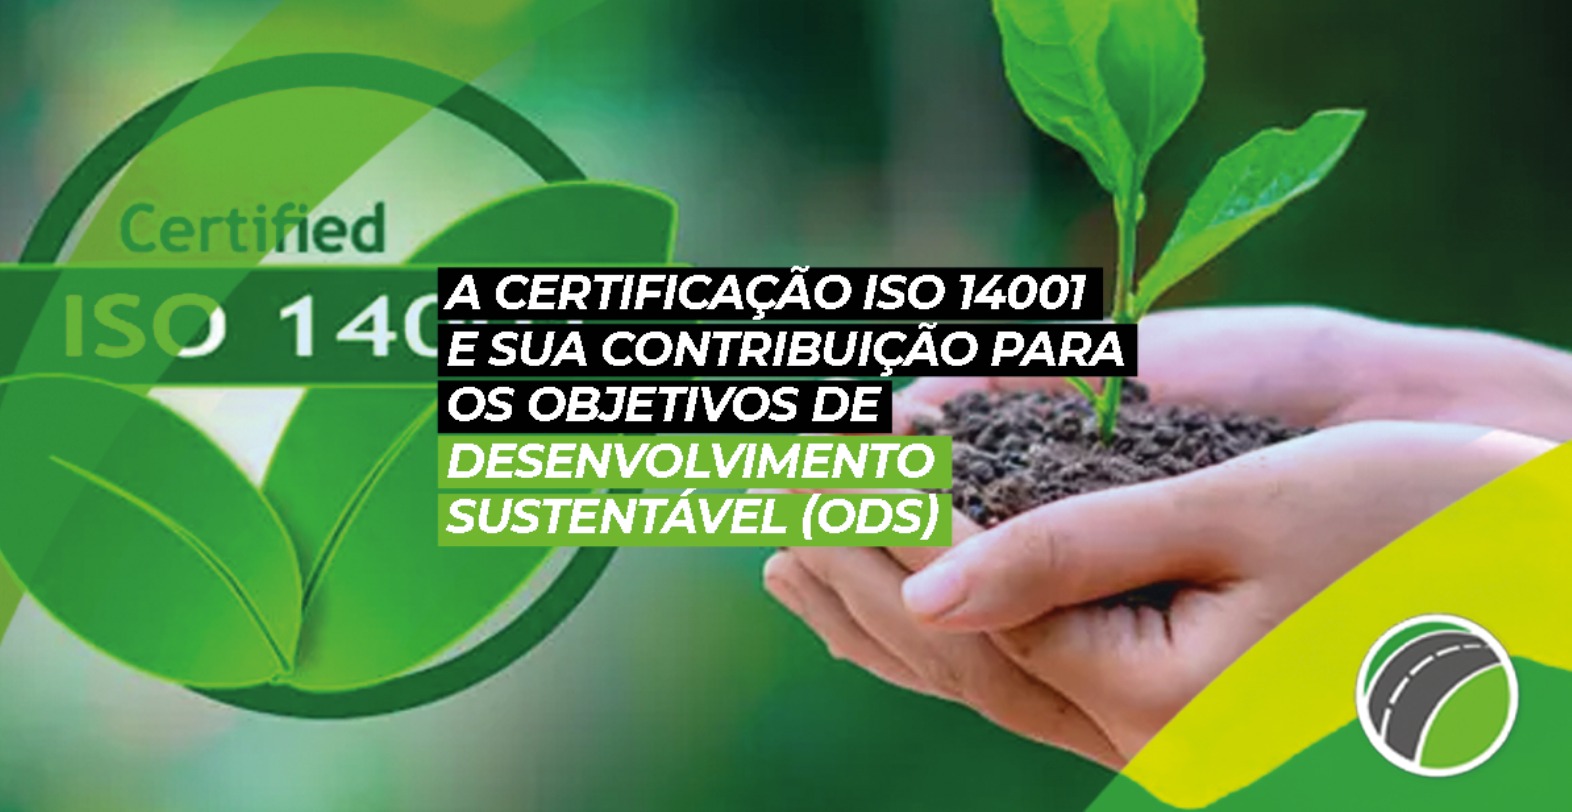 A Certificação ISO 14001 e sua Contribuição para os Objetivos de Desenvolvimento Sustentável - ODS